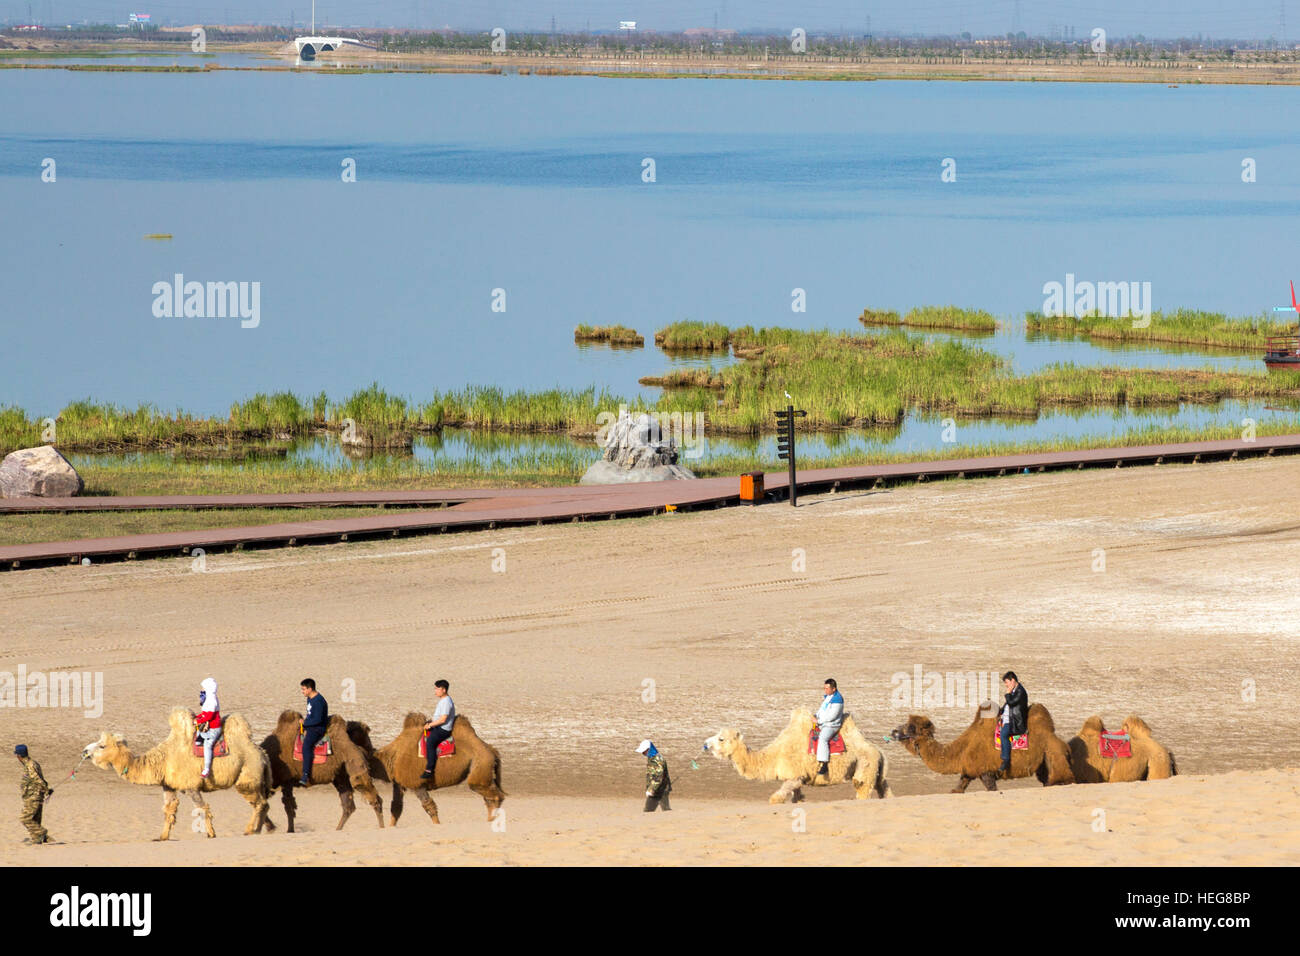 Les touristes chameaux dans le désert à Sand Lake Scenic Area, Shizuishan, Ningxia, Chine Banque D'Images